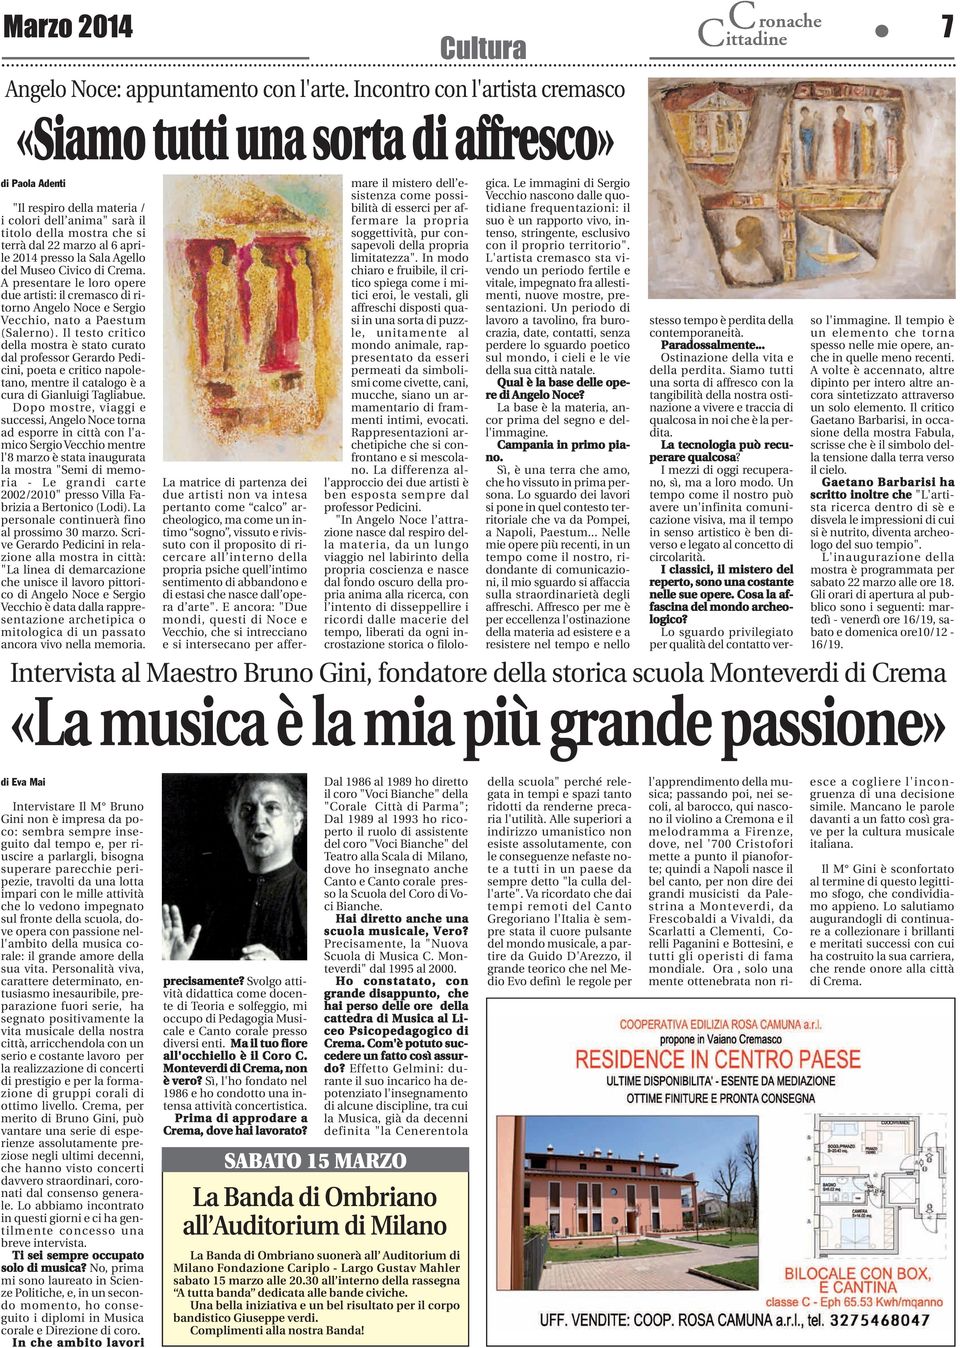 aprile 2014 presso la Sala Agello del Museo Civico di Crema. A presentare le loro opere due artisti: il cremasco di ritorno Angelo Noce e Sergio Vecchio, nato a Paestum (Salerno).